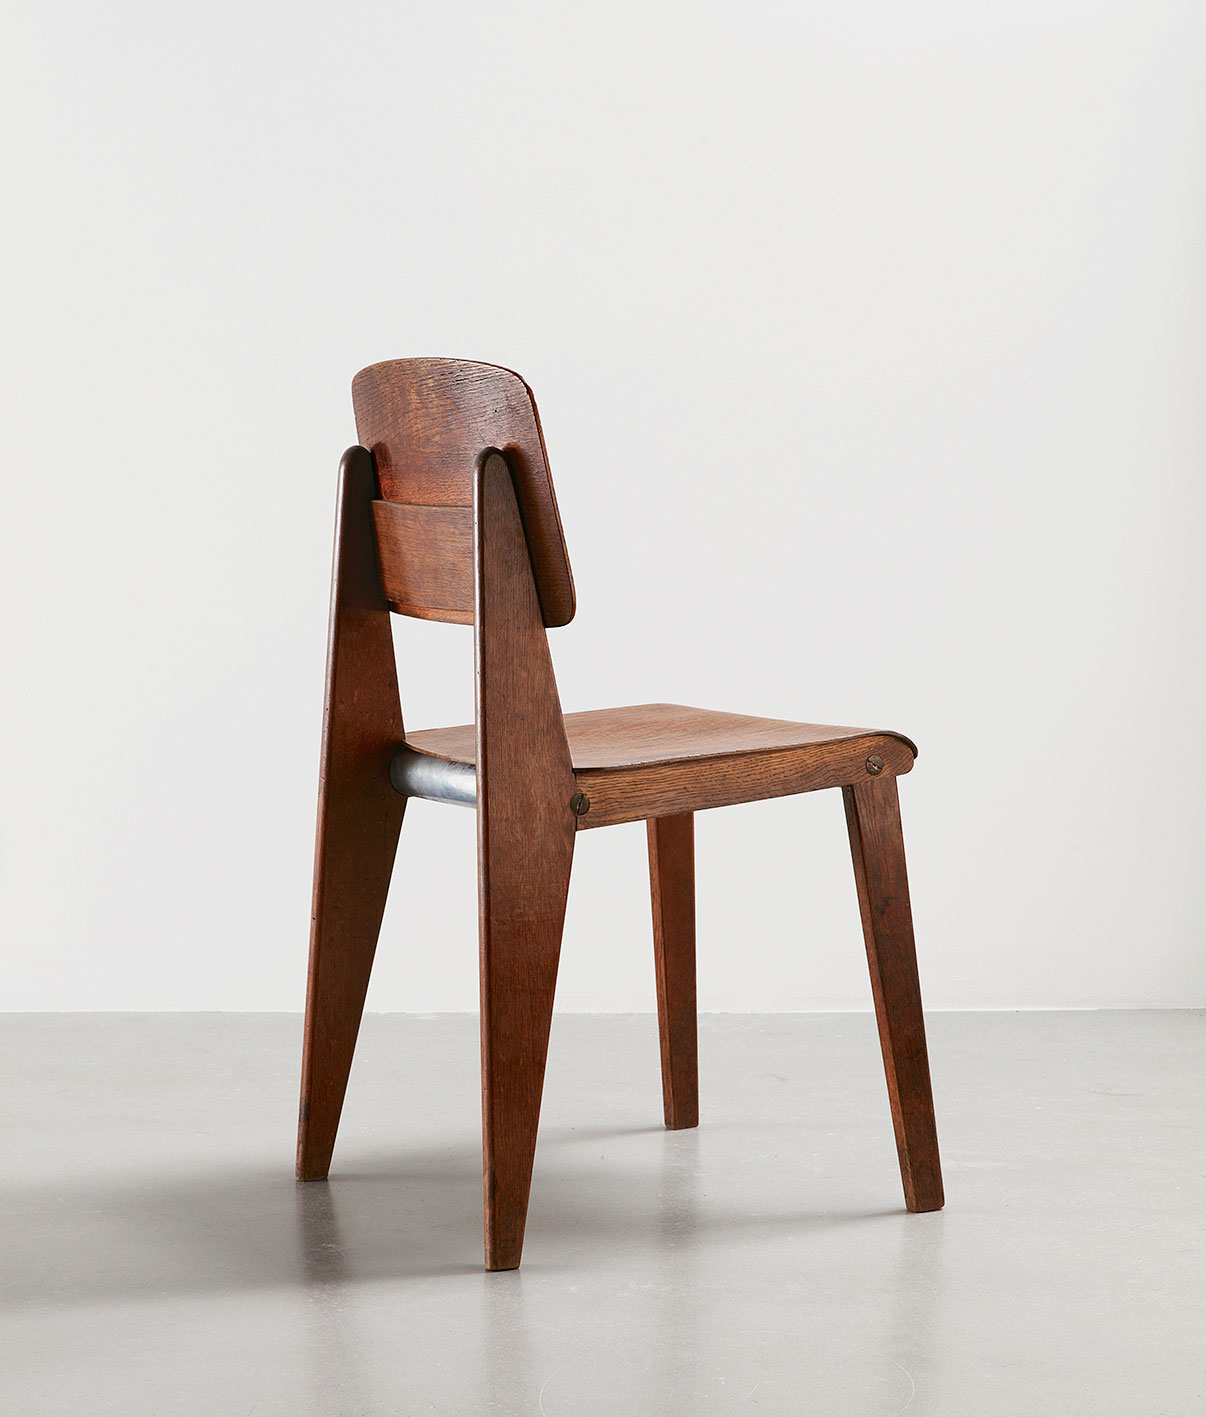 Demountable wooden chair CB 22, variant with tubular aluminum brace, c. 1947.